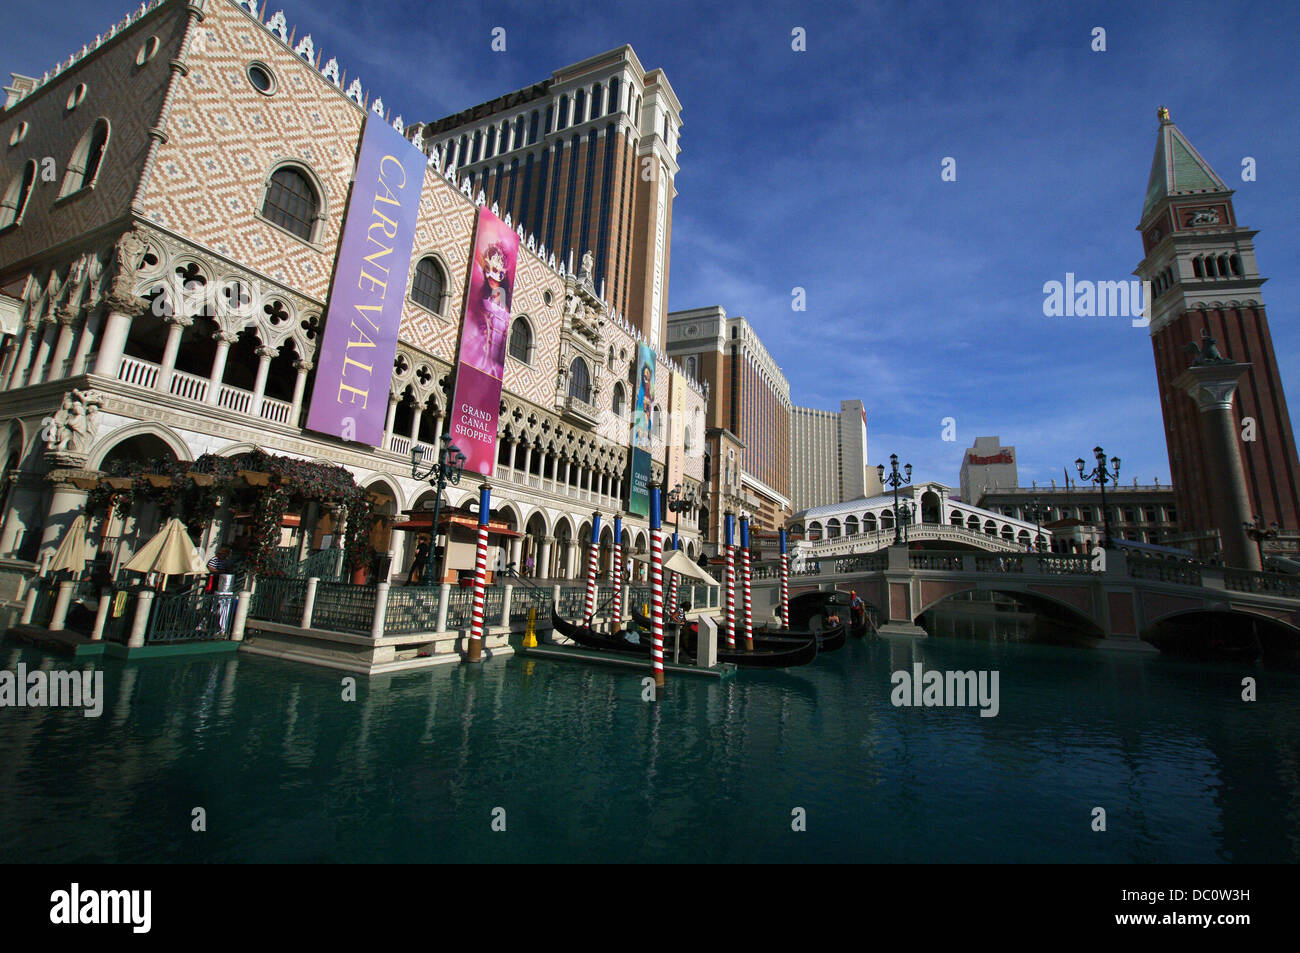 Réplique du Palais des Doges, le Pont du Rialto et la Place Saint-Marc à Venise Campanile au Venetian Resort Hotel Casino à Las Vegas, USA Banque D'Images